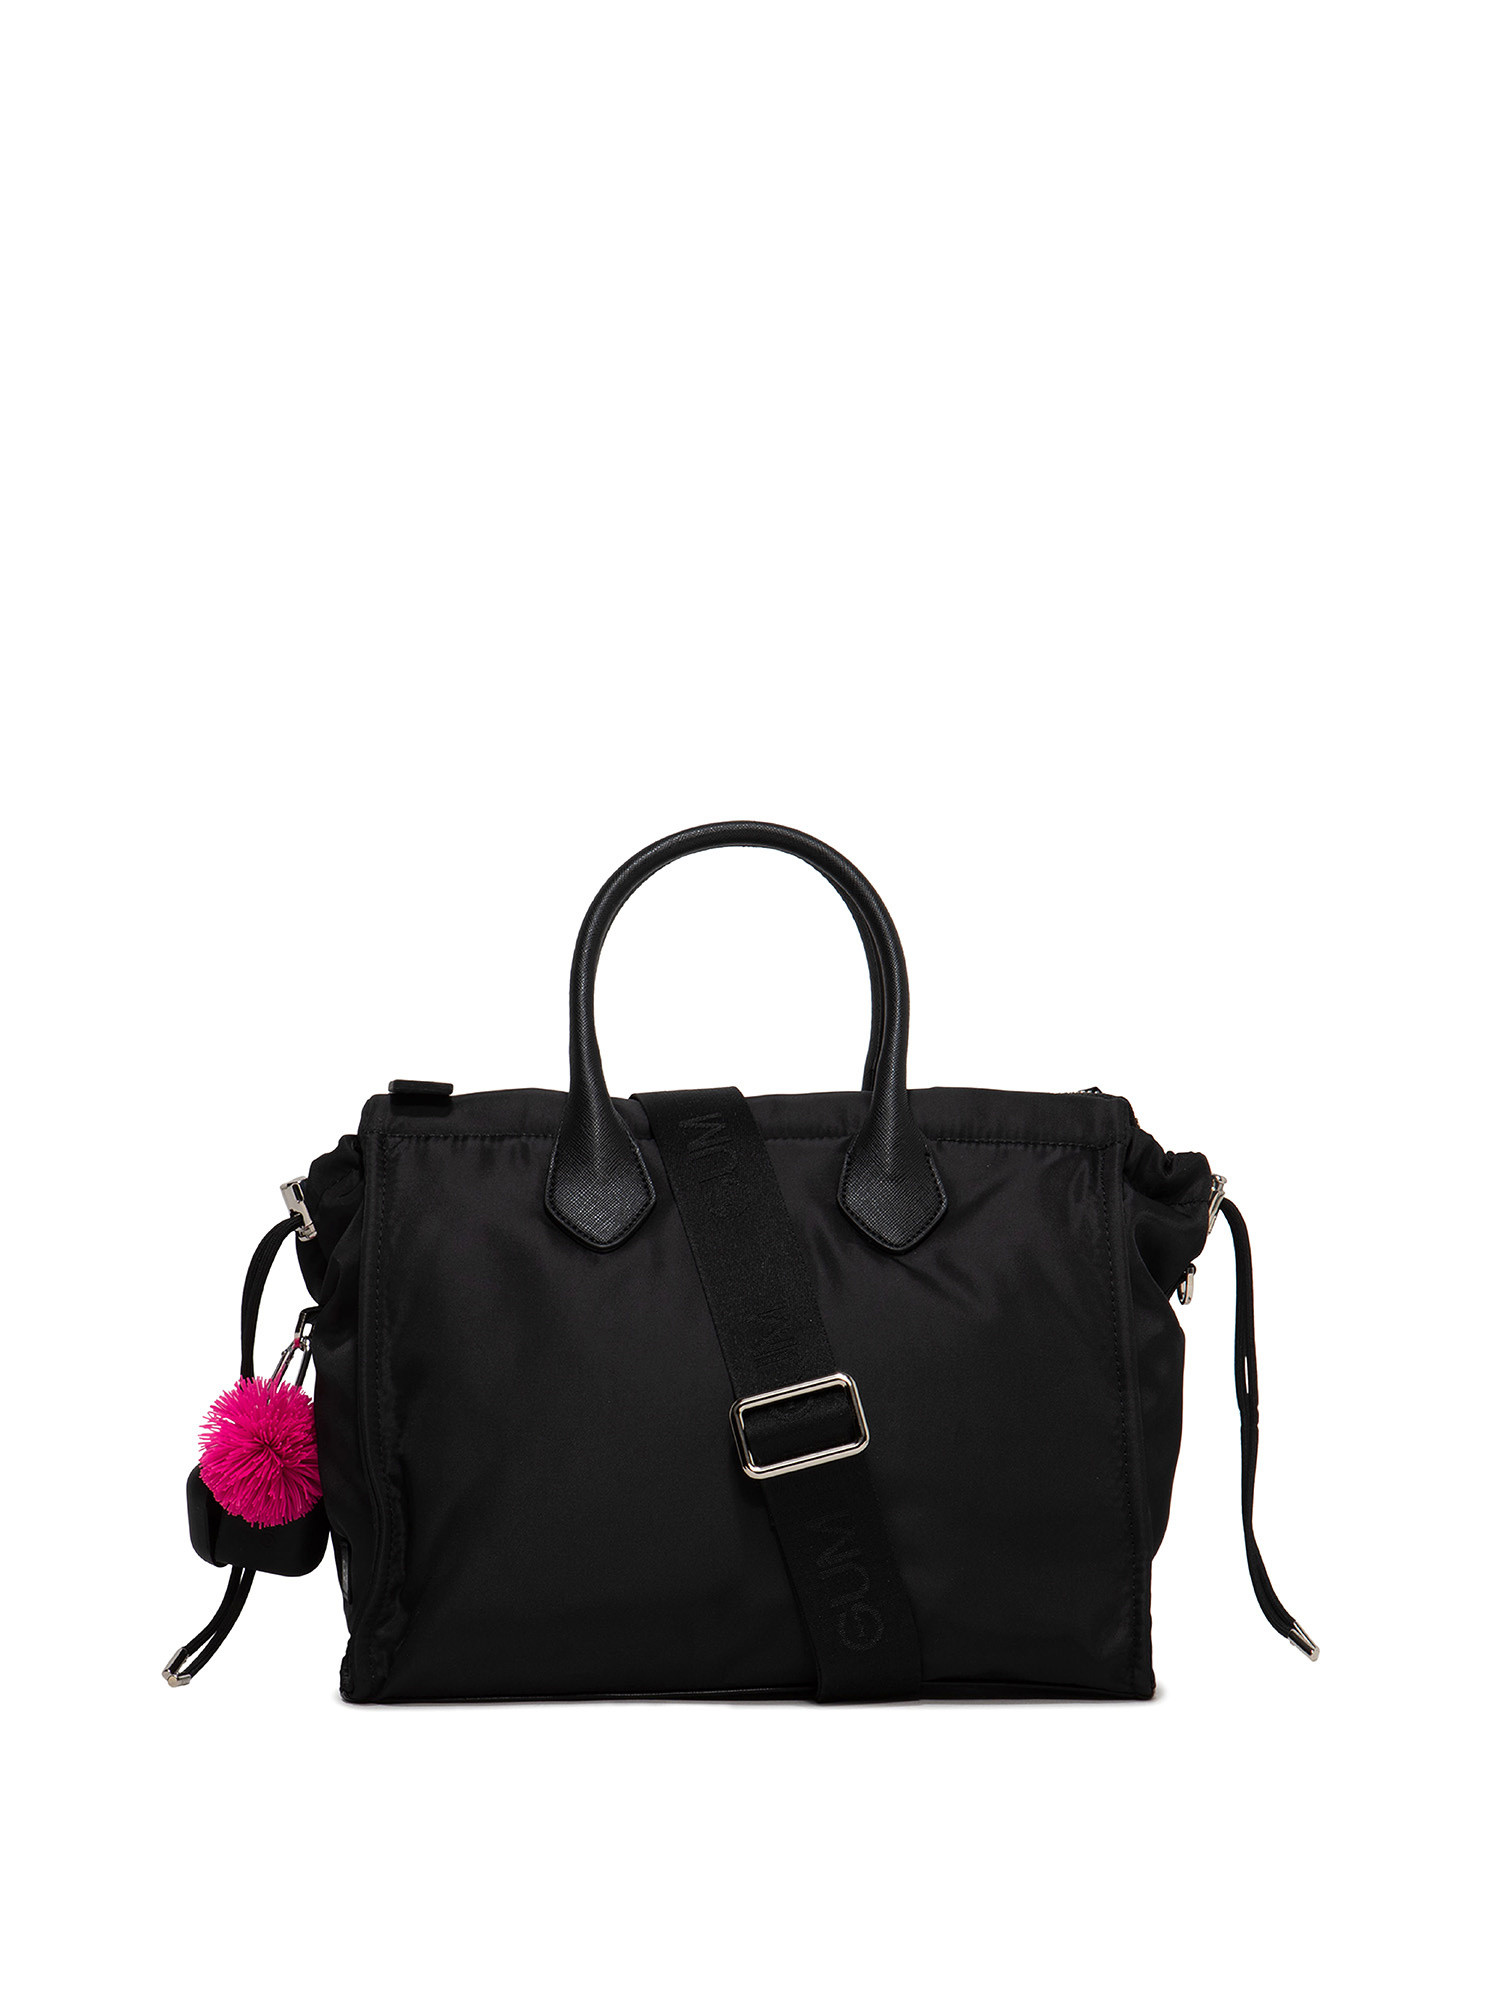 Large handbag Escape, Black, large image number 0